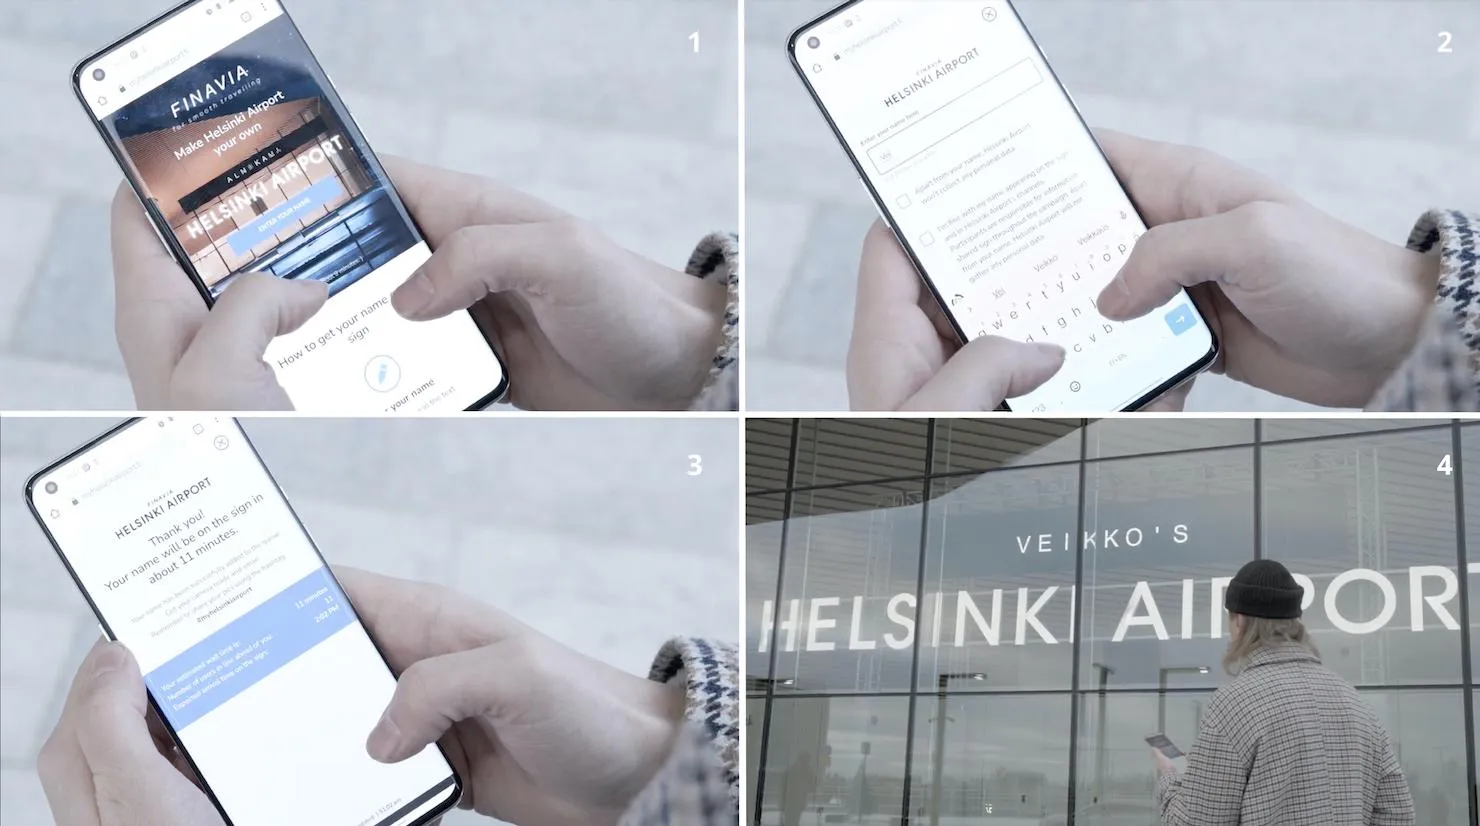 Пасажири аеропорту Гельсінкі зможуть перейменувати його на свою честь